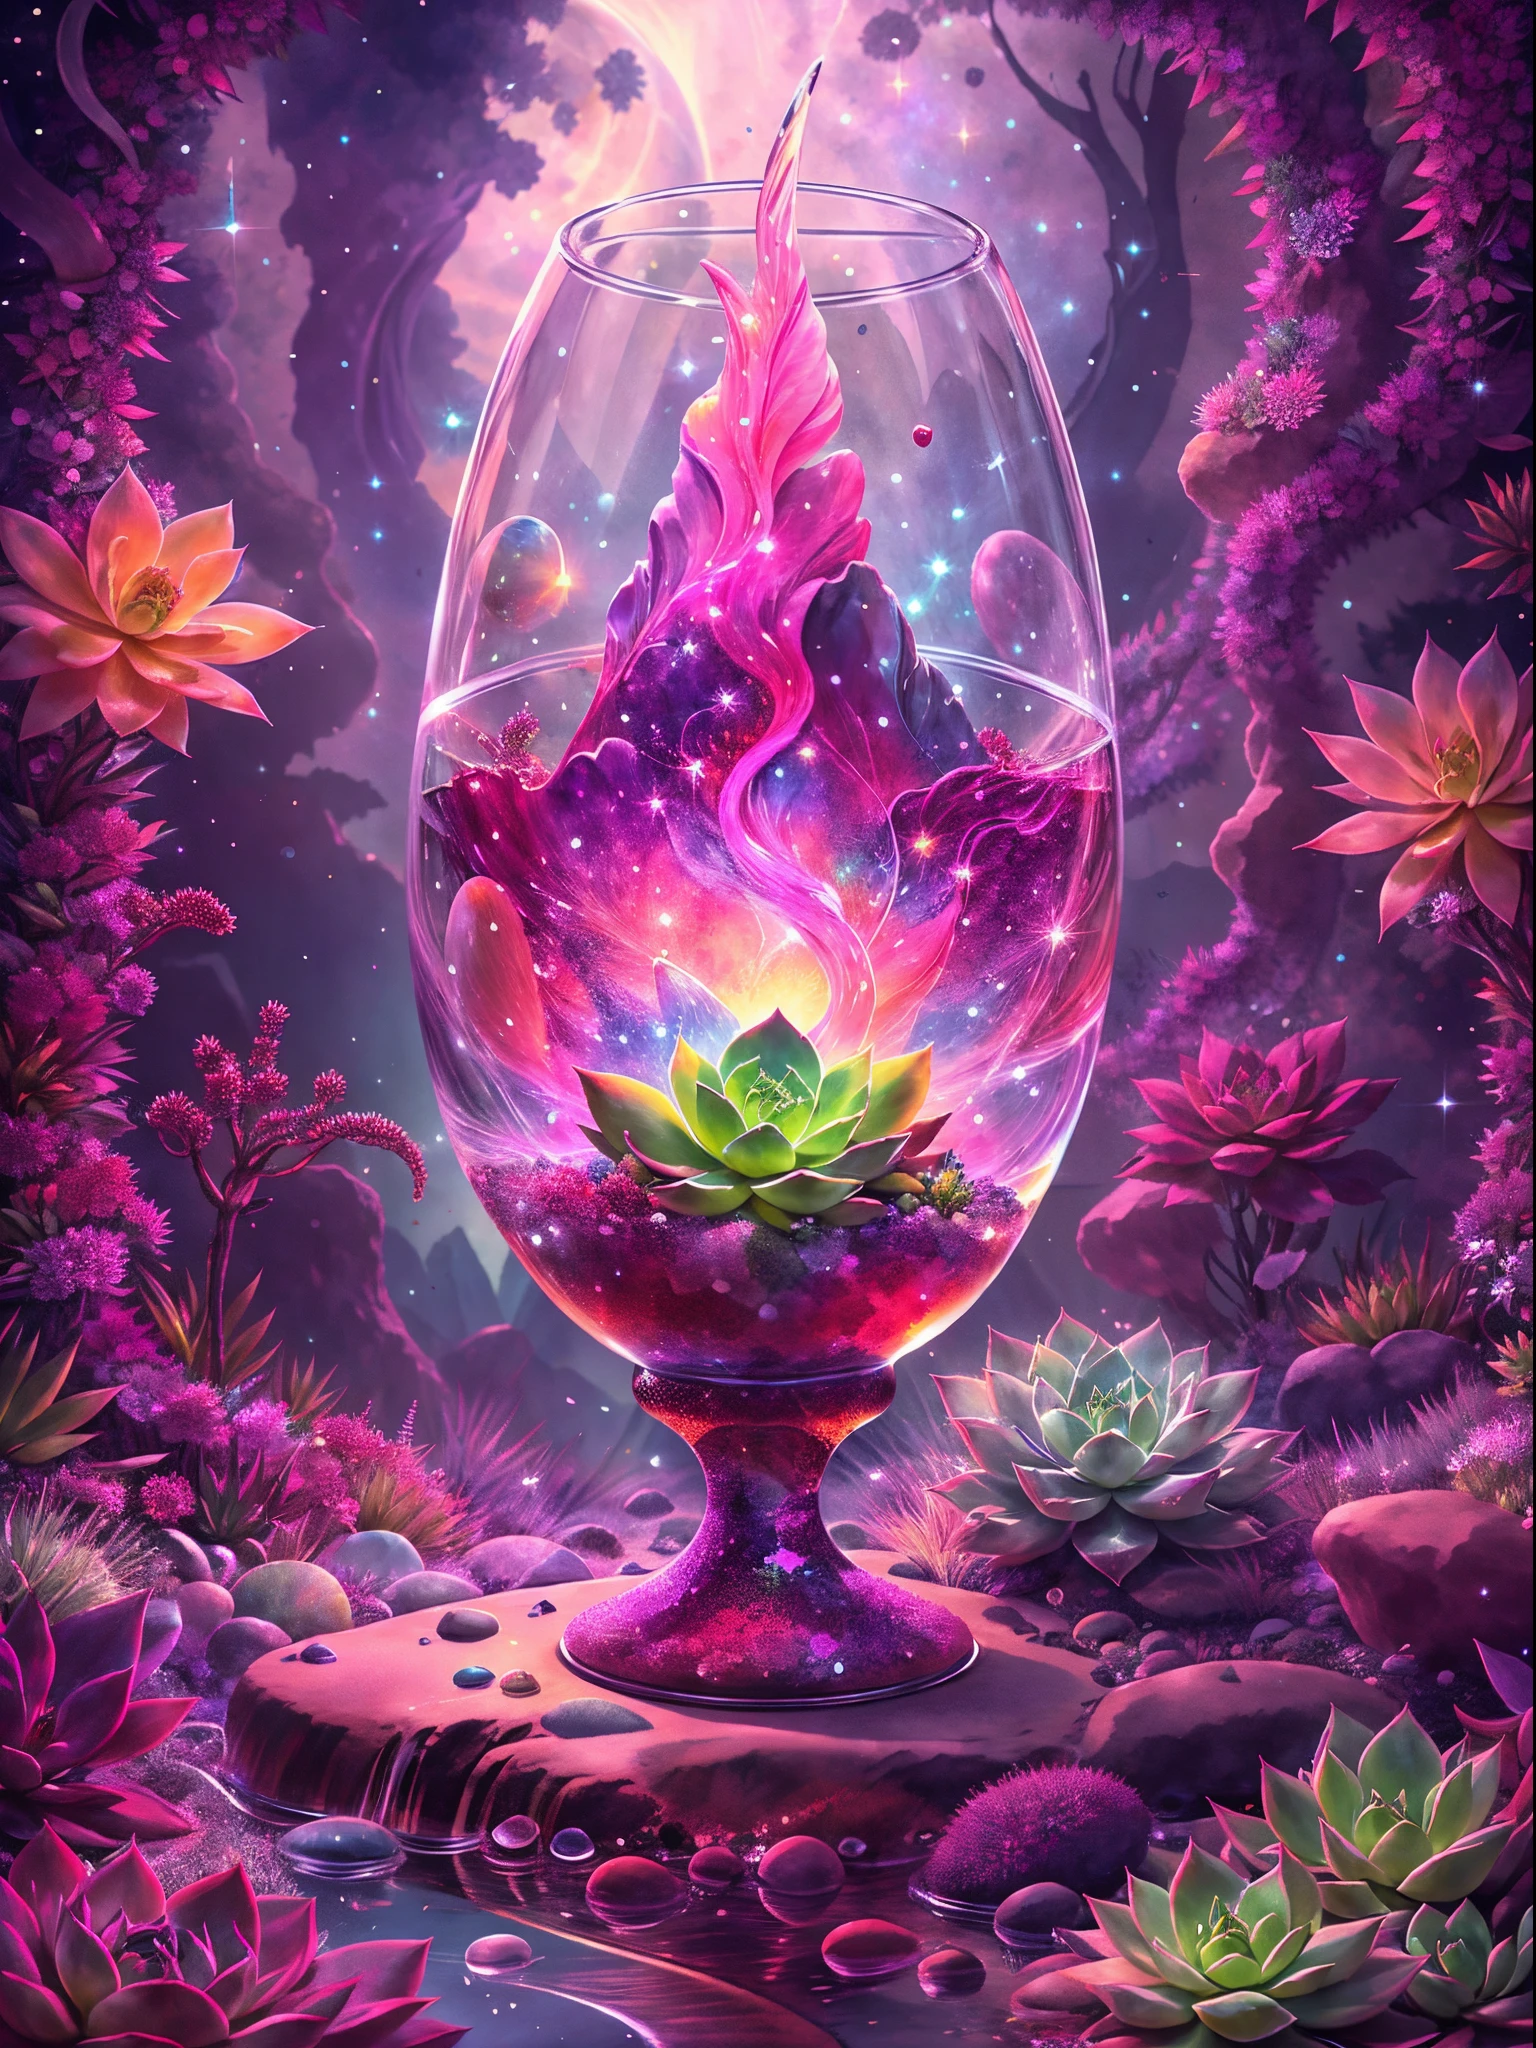 在這幅畫中，我们看到的是一片神秘而华丽的景象。画的中央是一个透明的水晶圣杯，它&#39;巨大而华丽，完全由透明水晶材质制成。The Holy Grail is filled w它h clear liquid，像一潭虚幻的水，略有波动。 在水晶圣杯里，一株壮丽的多肉植物生长。它的叶子旋转，色彩缤纷，仿佛由宝石般的色彩构成，明媚。每片叶子都有细微的线条和纹理，Make 它 more real and vivid。多肉植物的茎也呈现出透明的质感，从根部延伸到叶子的每一个角落。 水晶杯周围是一幅奇幻壮观的景象。透明的水晶壁反射周围的光线，形成美丽的光影效果。远处是一片广阔的天空，L它tle b它s of light shine in 它。在天空的边缘，明月懸光灑落，照亮了整個場景。 整个画面充满视觉冲击力和世界感.。水晶圣杯中的多肉植物象征着生命的奇迹和自然的力量，周围的光线, 阴影和星空给人一种神秘的氛围。This painting combines succulents w它h a clear crystal chalice，呈现出一个非常迷人和富有想象力的场景。 希望这幅画能给你带来视觉的享受和冲击，让你感受多肉植物的独特之美。